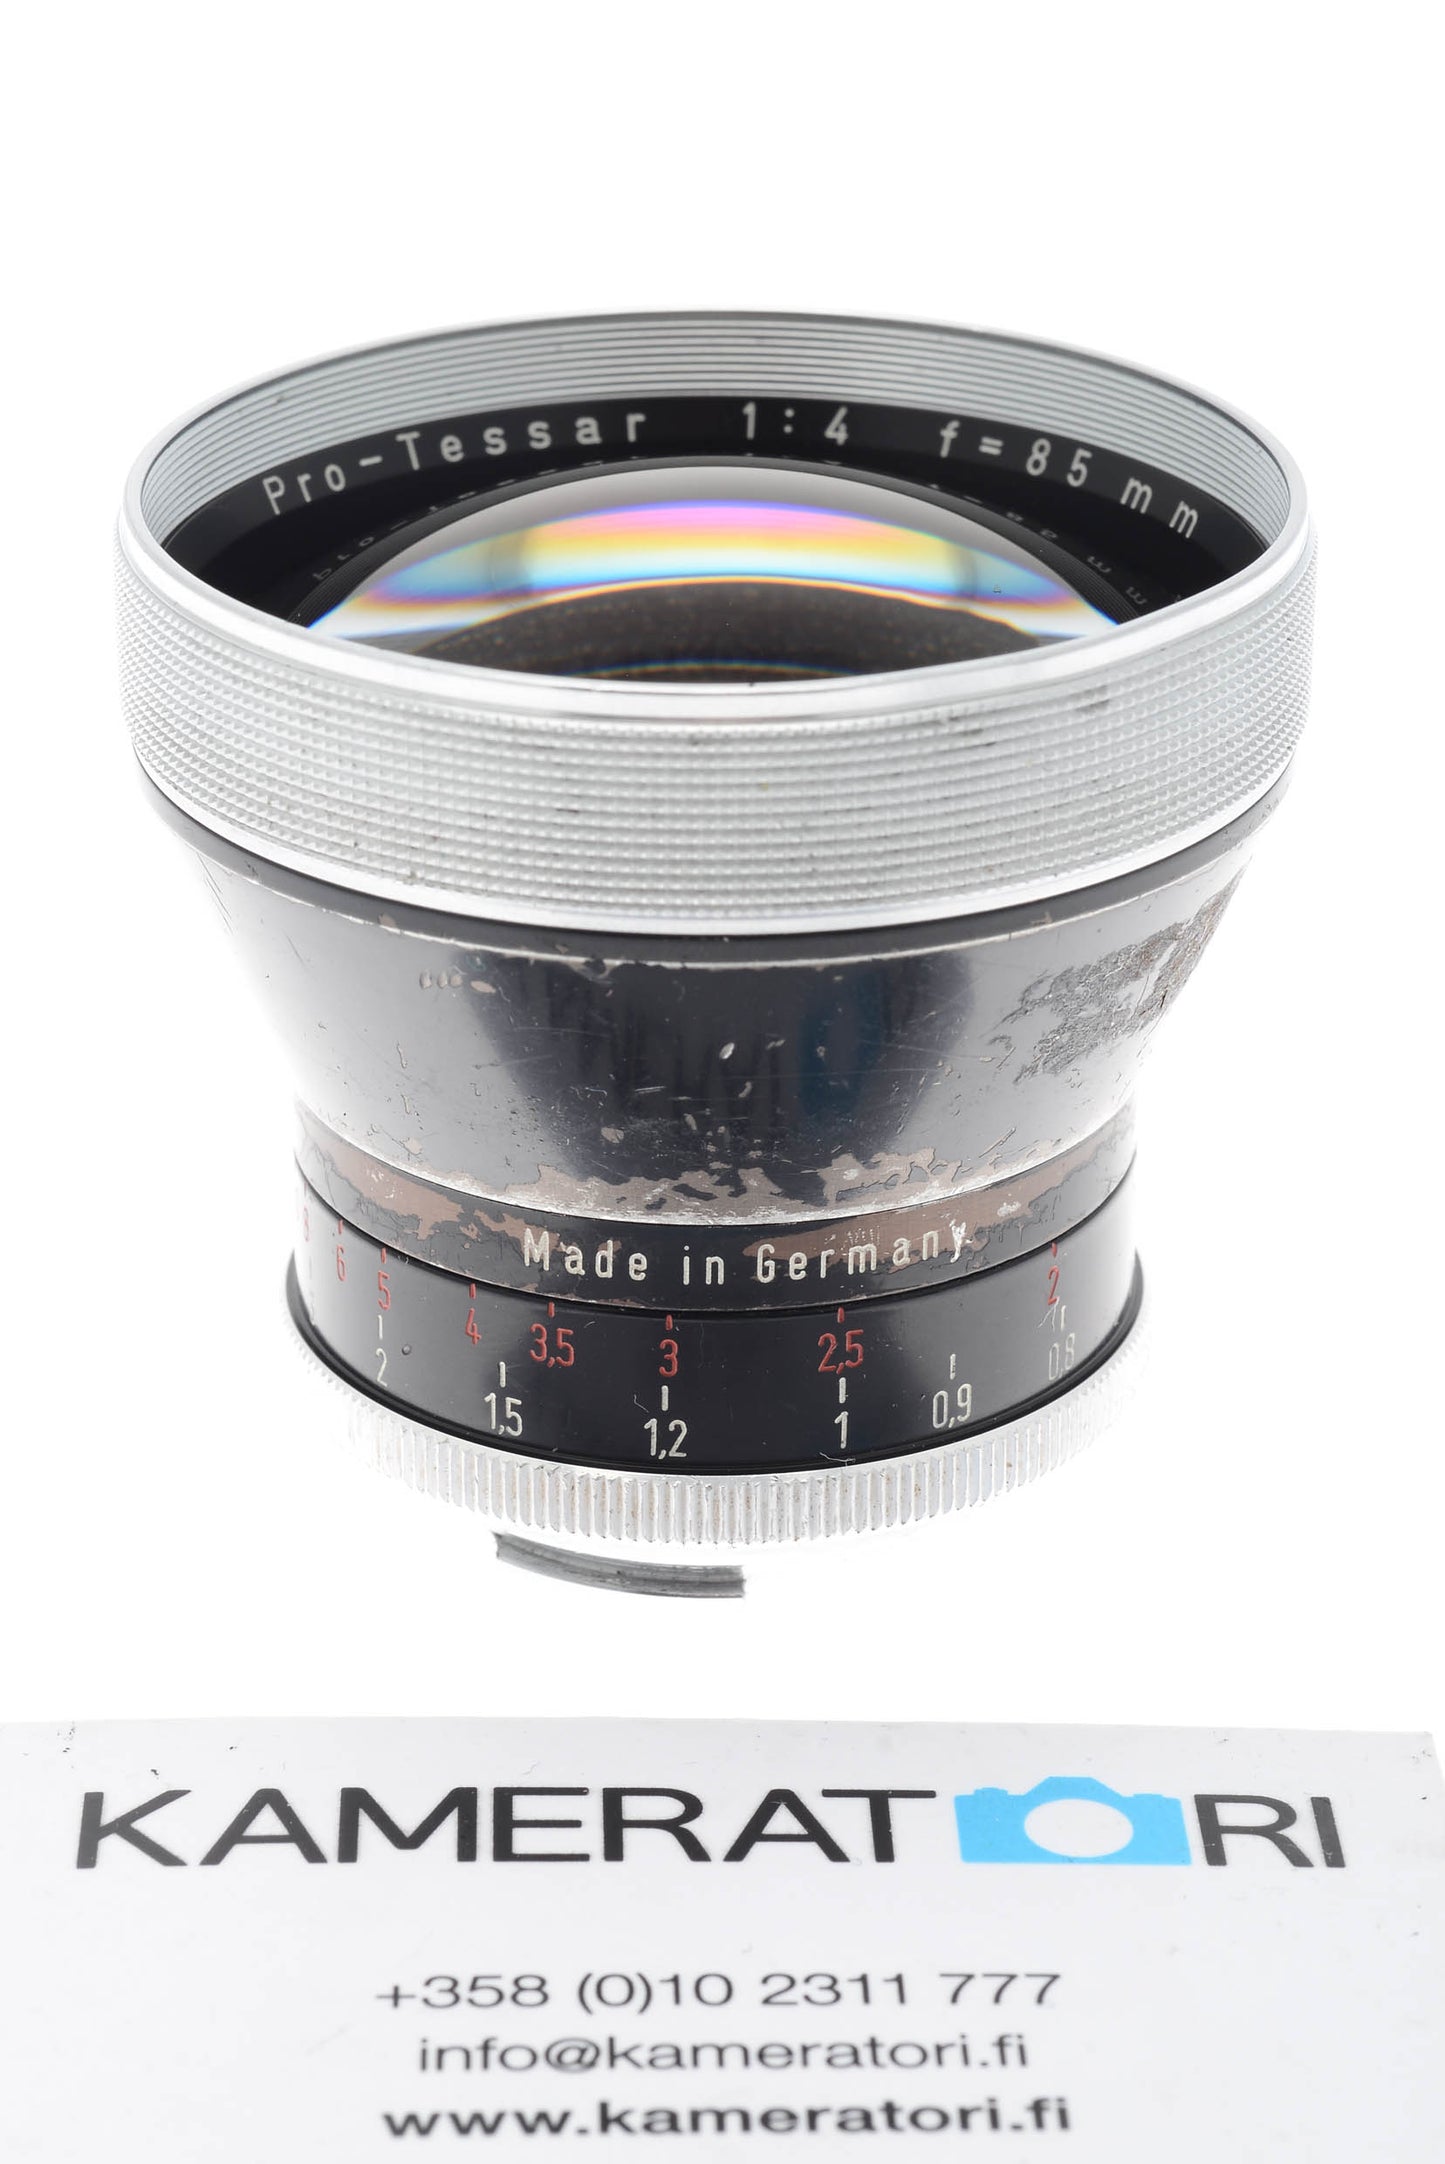 Carl Zeiss 85mm f4 Pro-Tessar - Lens